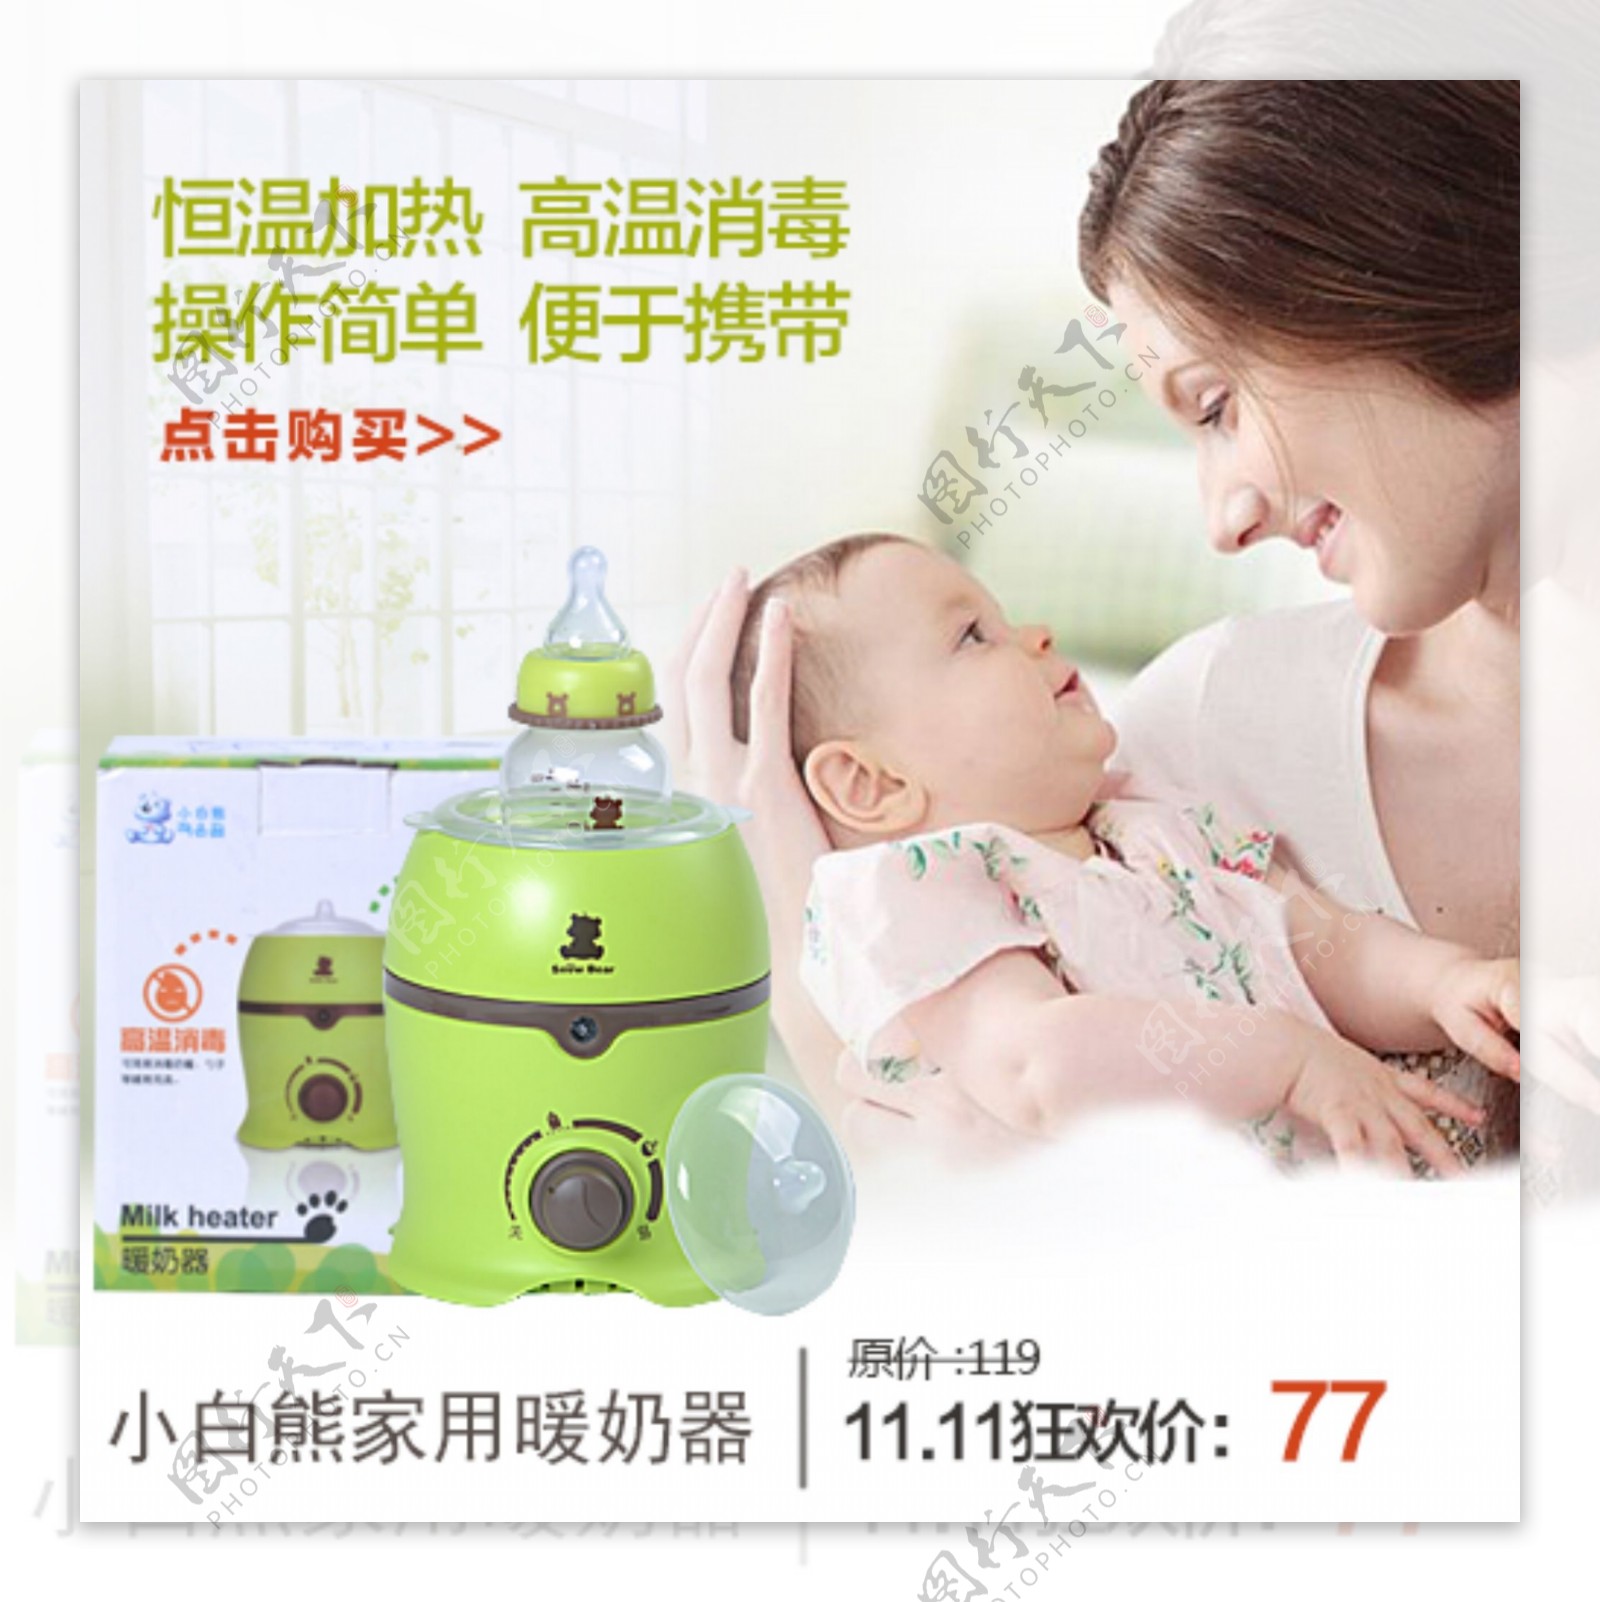 绿色小清新淘宝母婴海报